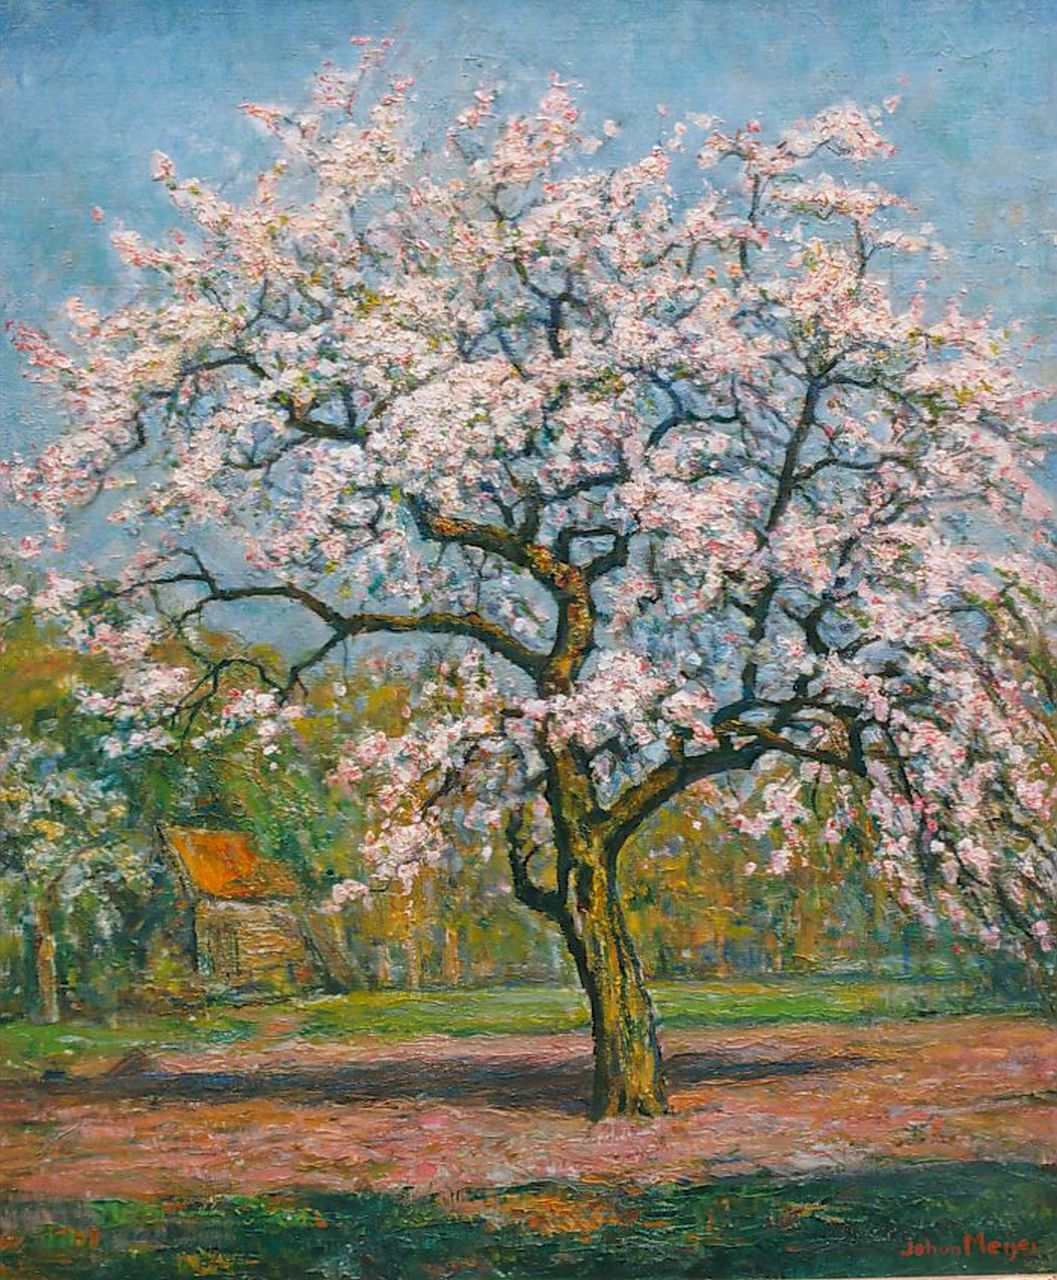 Meijer J.  | Johannes 'Johan' Meijer, A flowering tree, oil on canvas 60.0 x 50.0 cm, signed l.r.